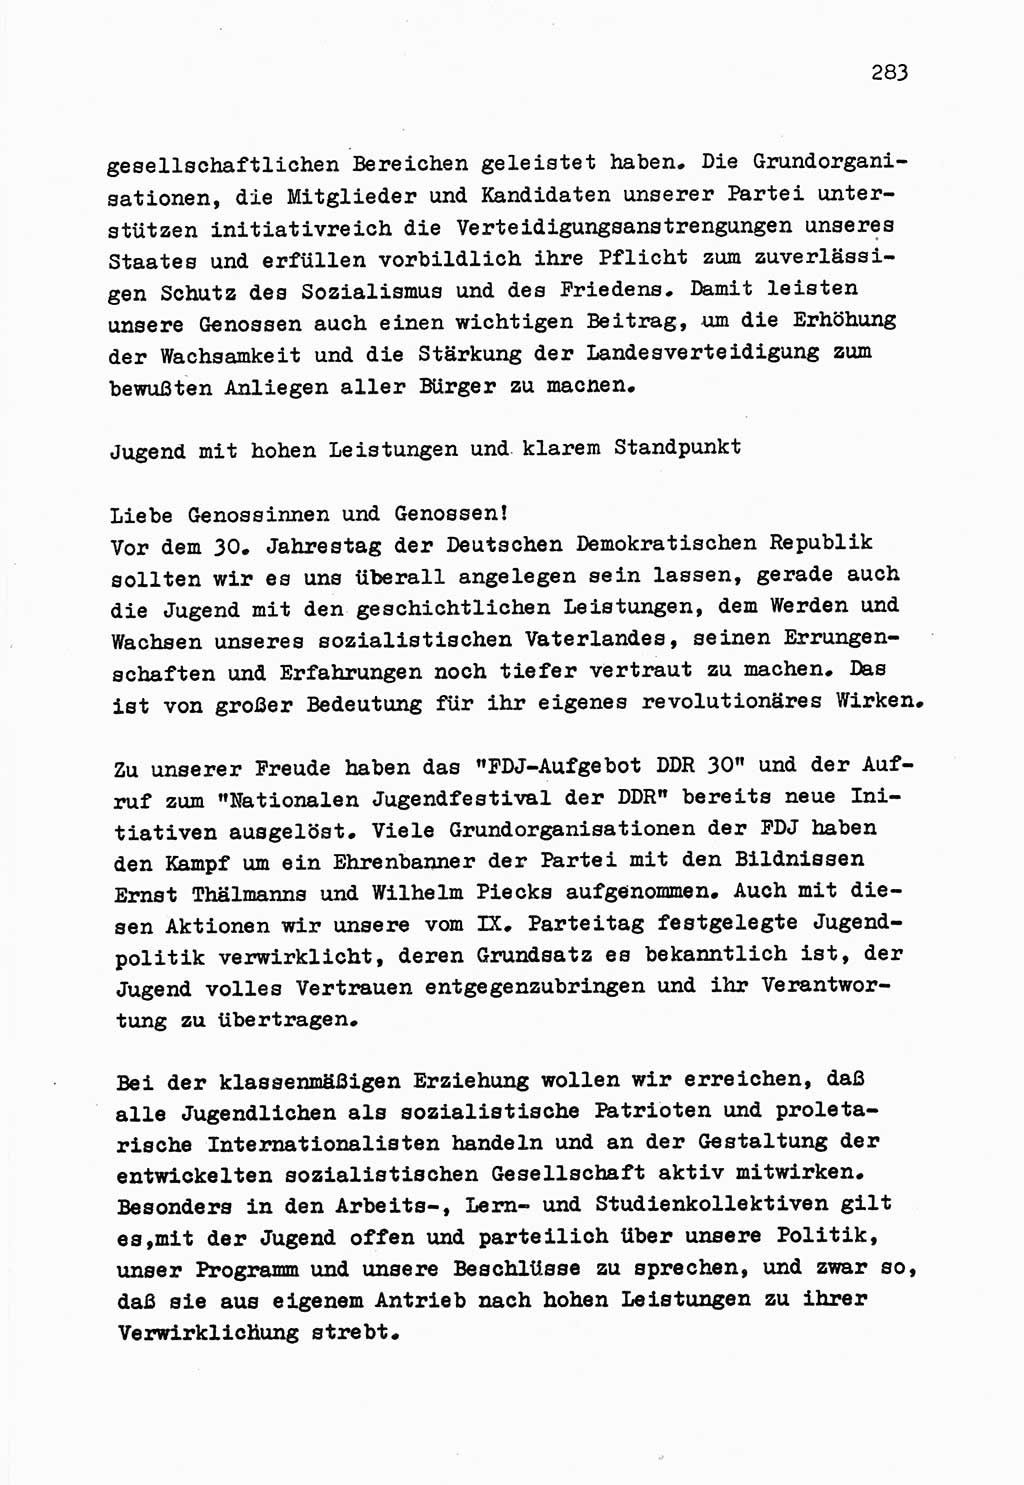 Zu Fragen der Parteiarbeit [Sozialistische Einheitspartei Deutschlands (SED) Deutsche Demokratische Republik (DDR)] 1979, Seite 283 (Fr. PA SED DDR 1979, S. 283)